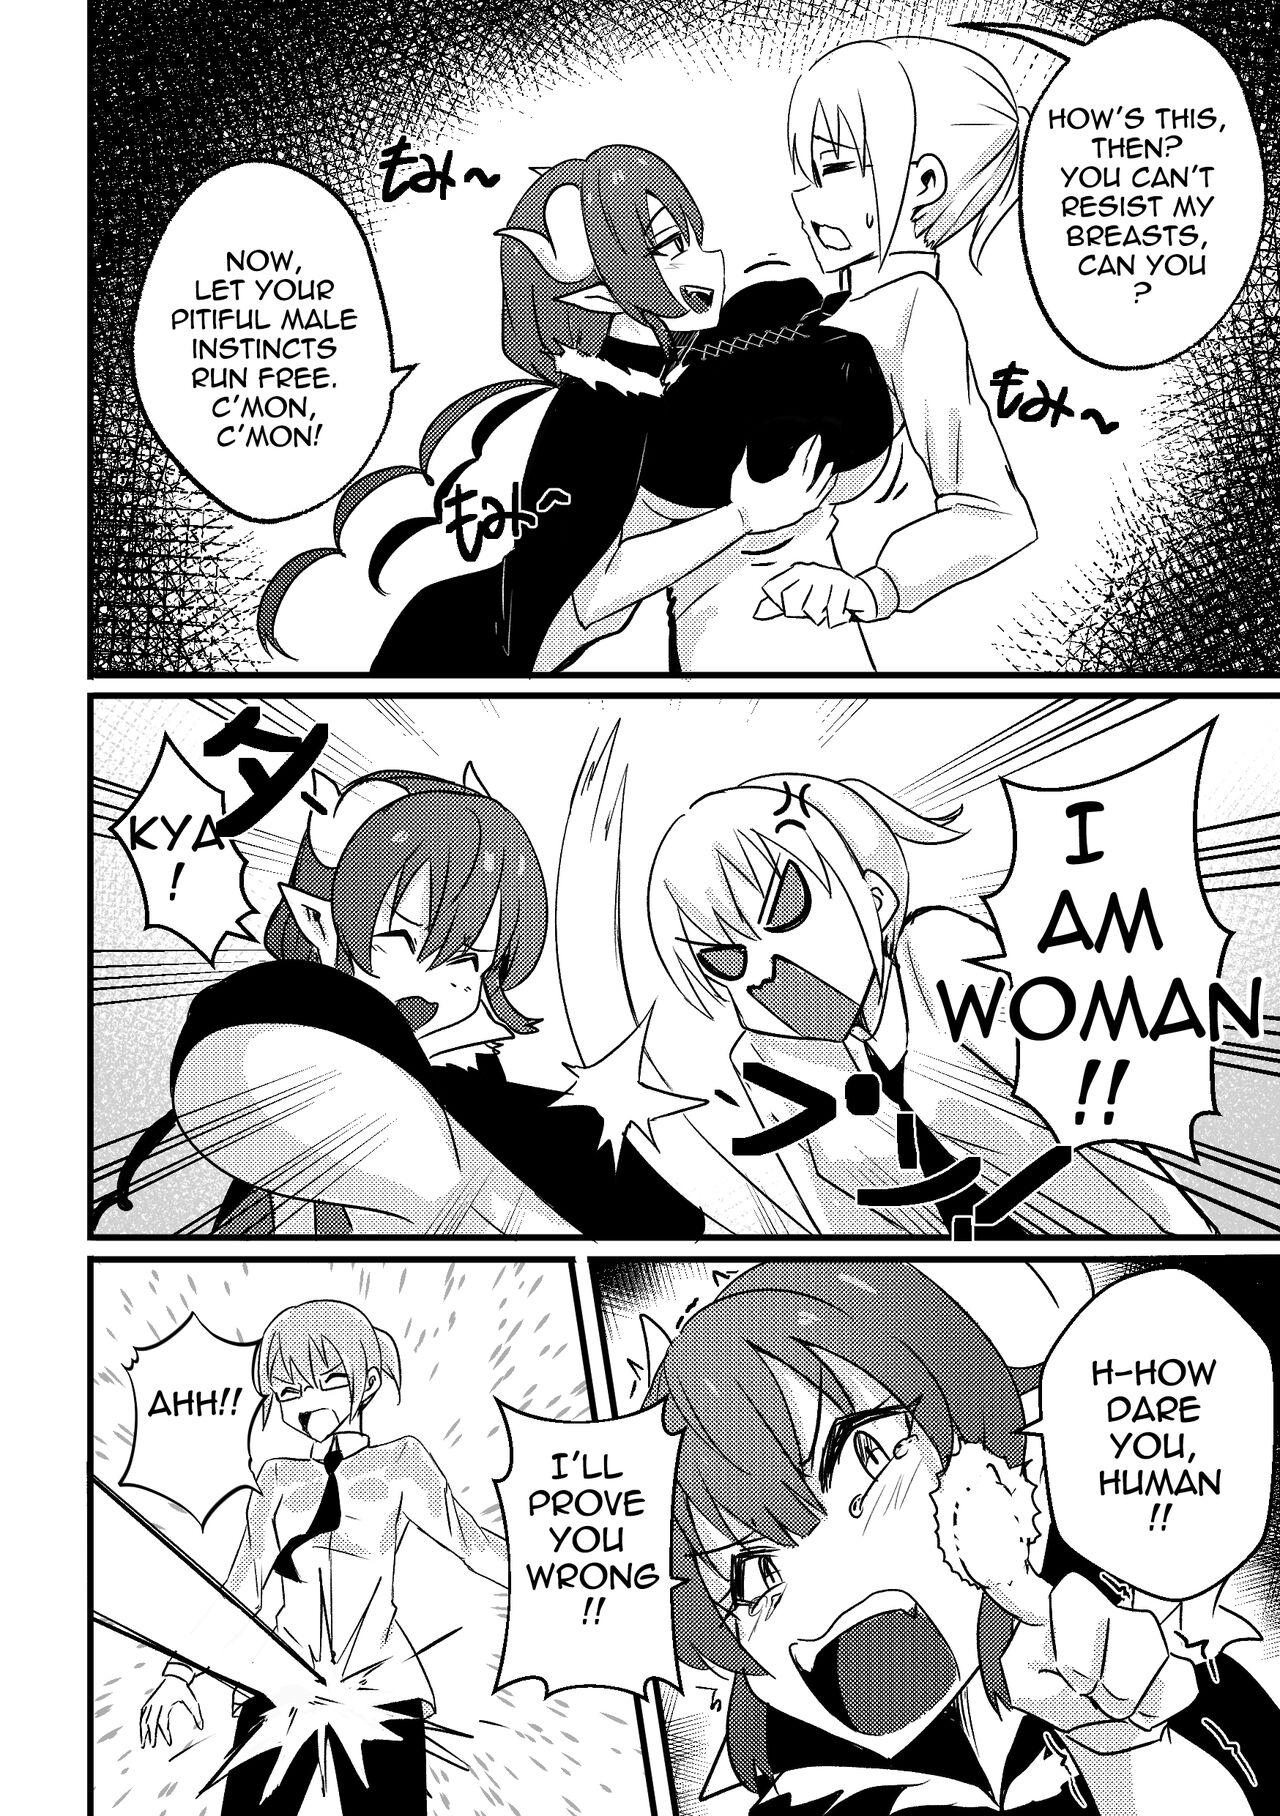 Story [Merkonig] ILULU WA MAKETA (Censored) EN - Kobayashi san chi no maid dragon Nena - Page 3